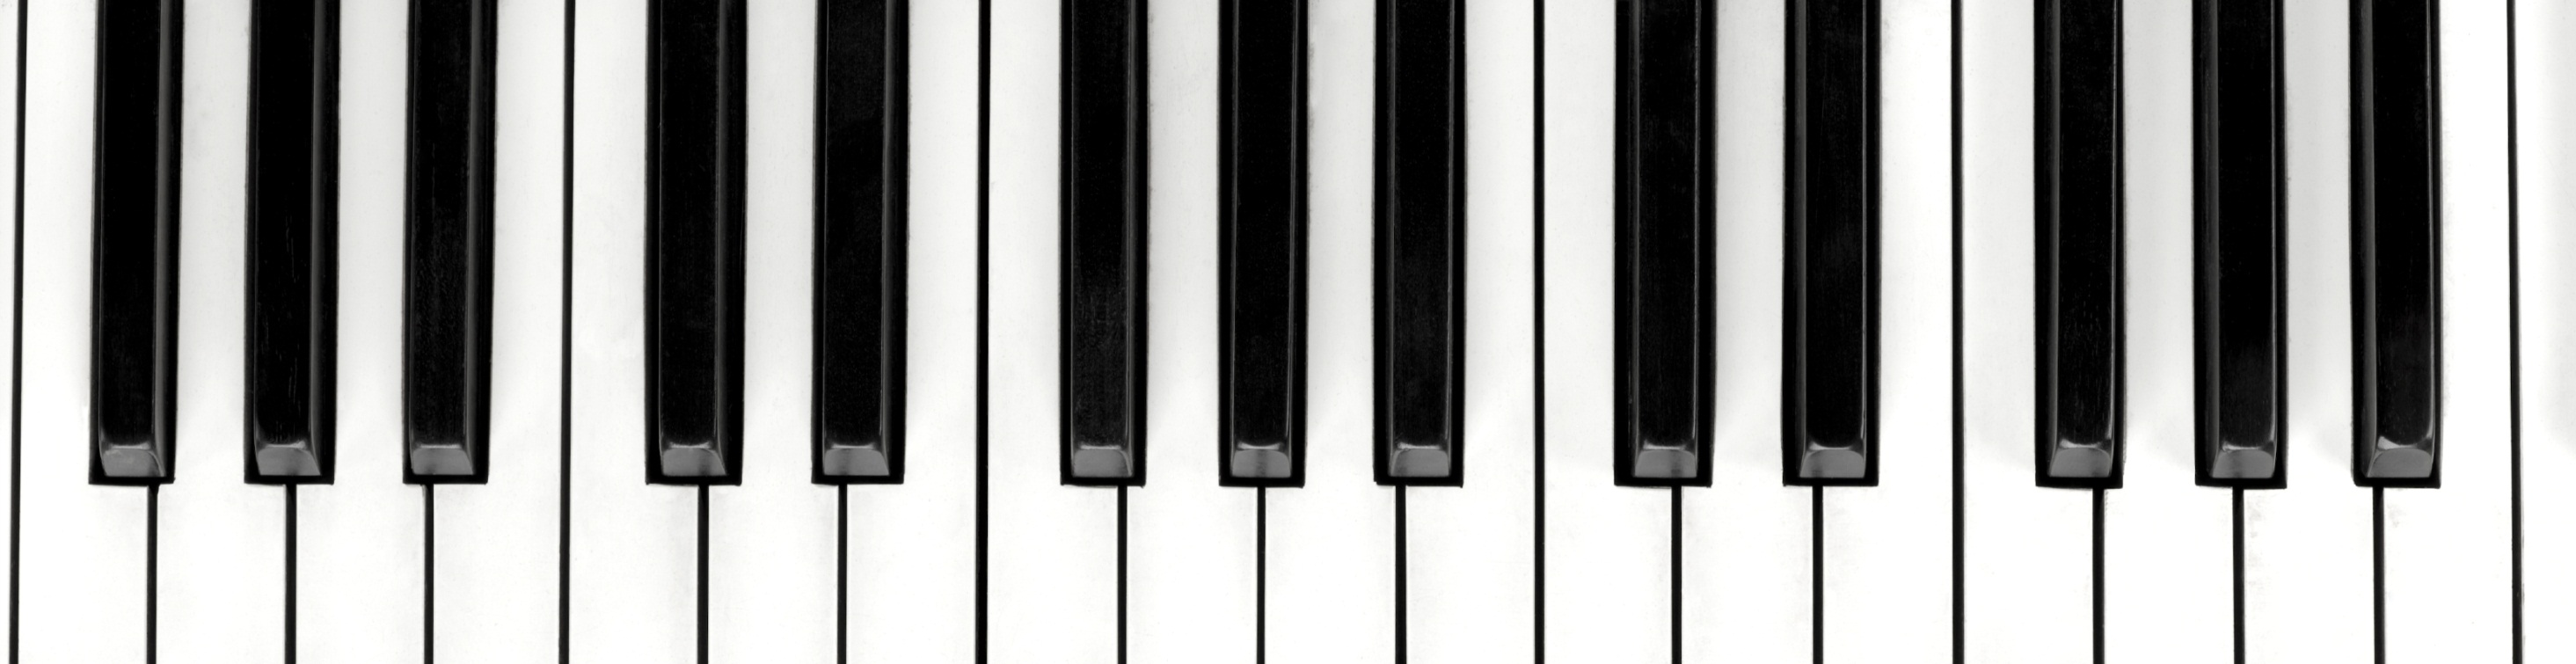 Клавиатура пианино 1 Октава а4